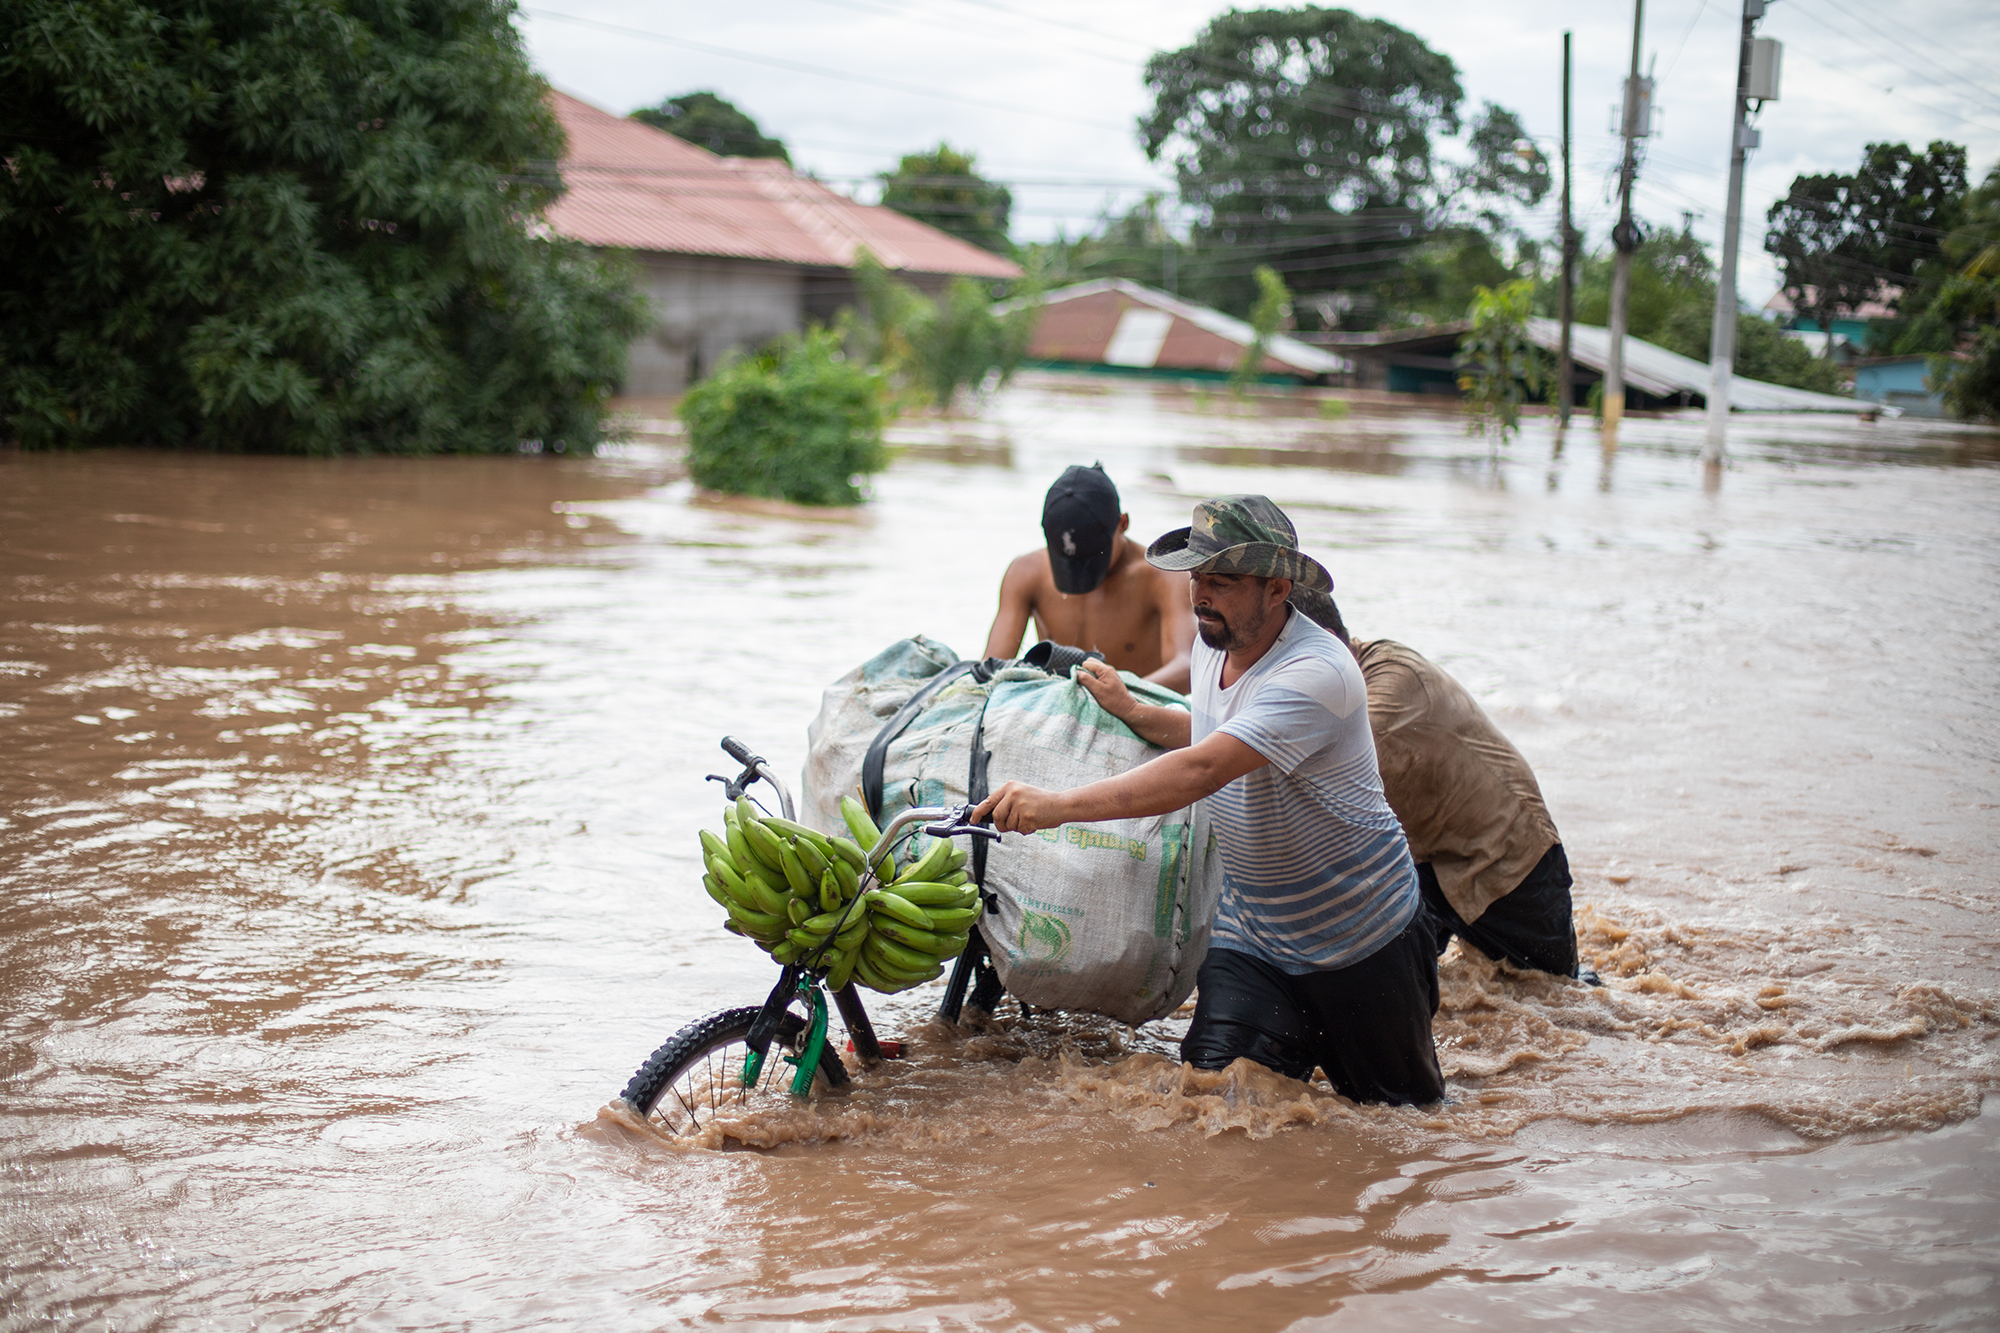 Un grupo de trabajadores de la compañía frutera Dole ha caminado en medio de la inundación a unos 800 metros desde la empacadora de la bananera en Omonita. San Manuel, Cortés, 18 de noviembre de 2020. Foto: Martín Cálix.